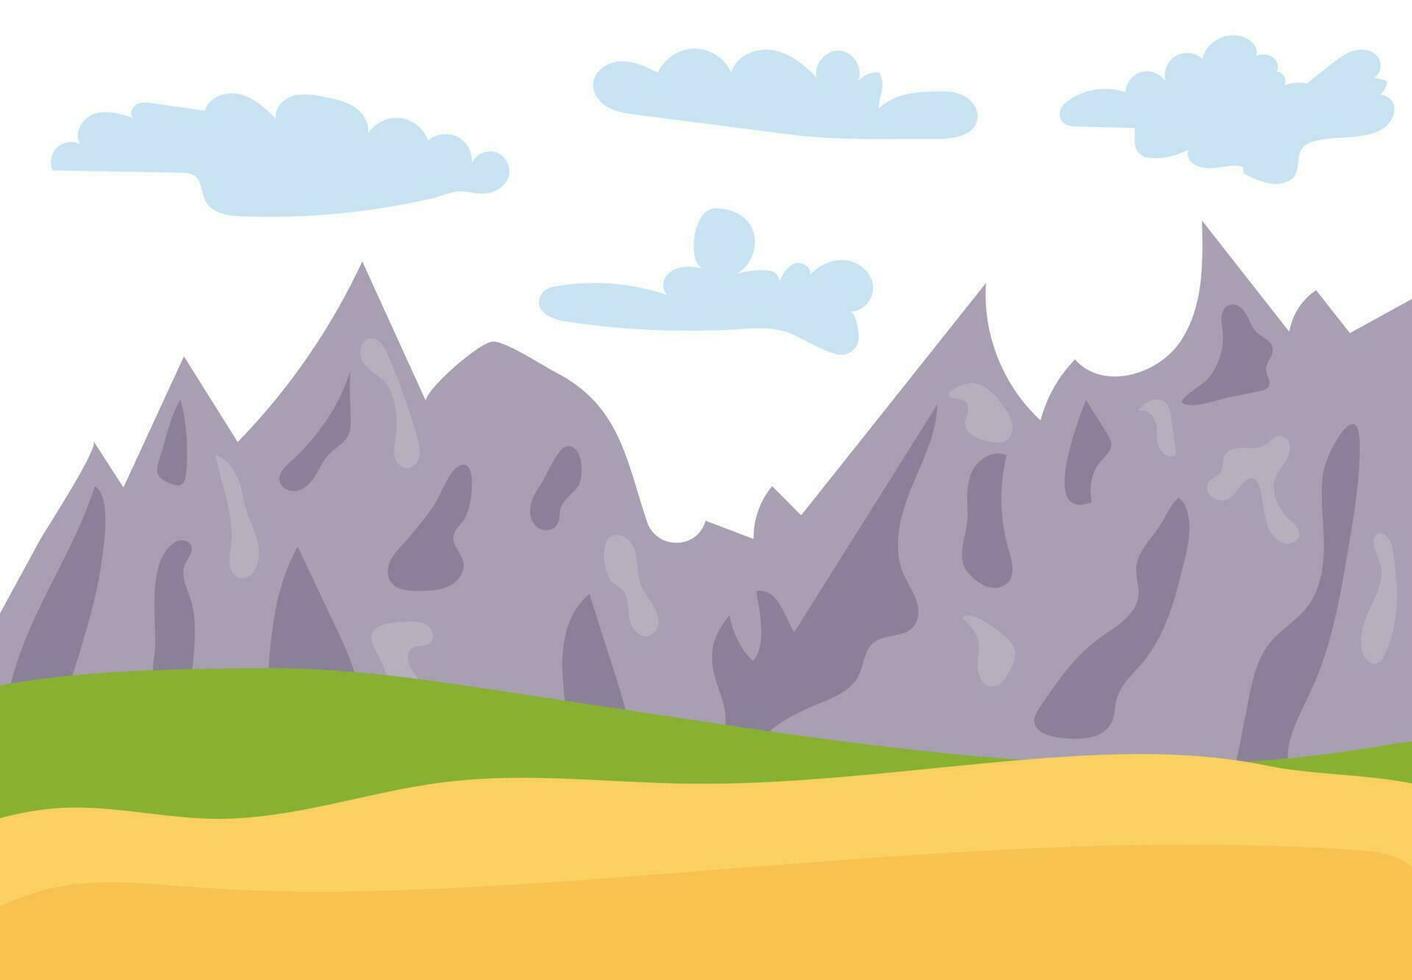 paisaje natural de dibujos animados al estilo plano con montañas, cielo azul, nubes y colinas. ilustración vectorial vector